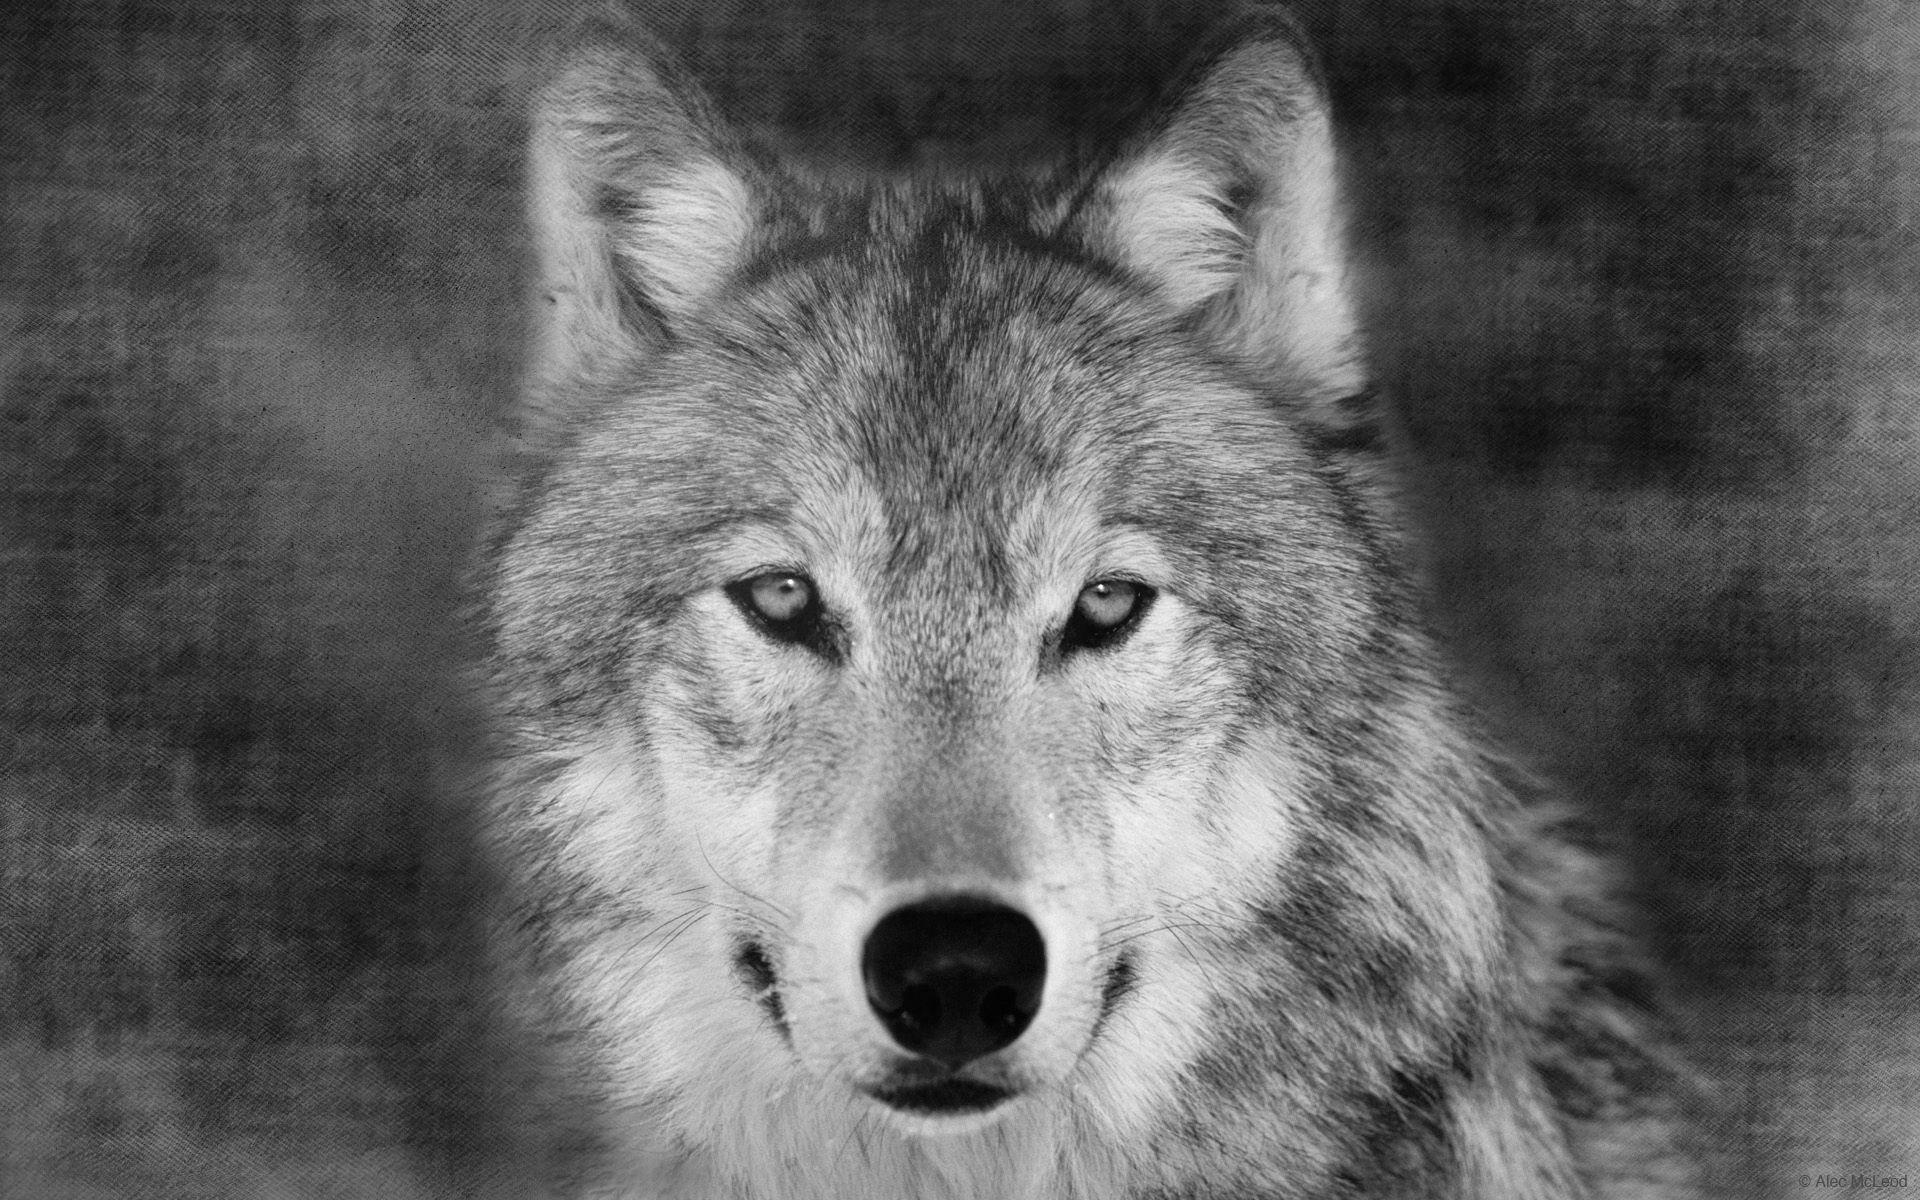 狼的眼睛 库存图片. 图片 包括有 单独, 野生生物, 狼疮, 队伍, 狗窝, 灰色, 犬属, 森林, 眼睛 - 28861743